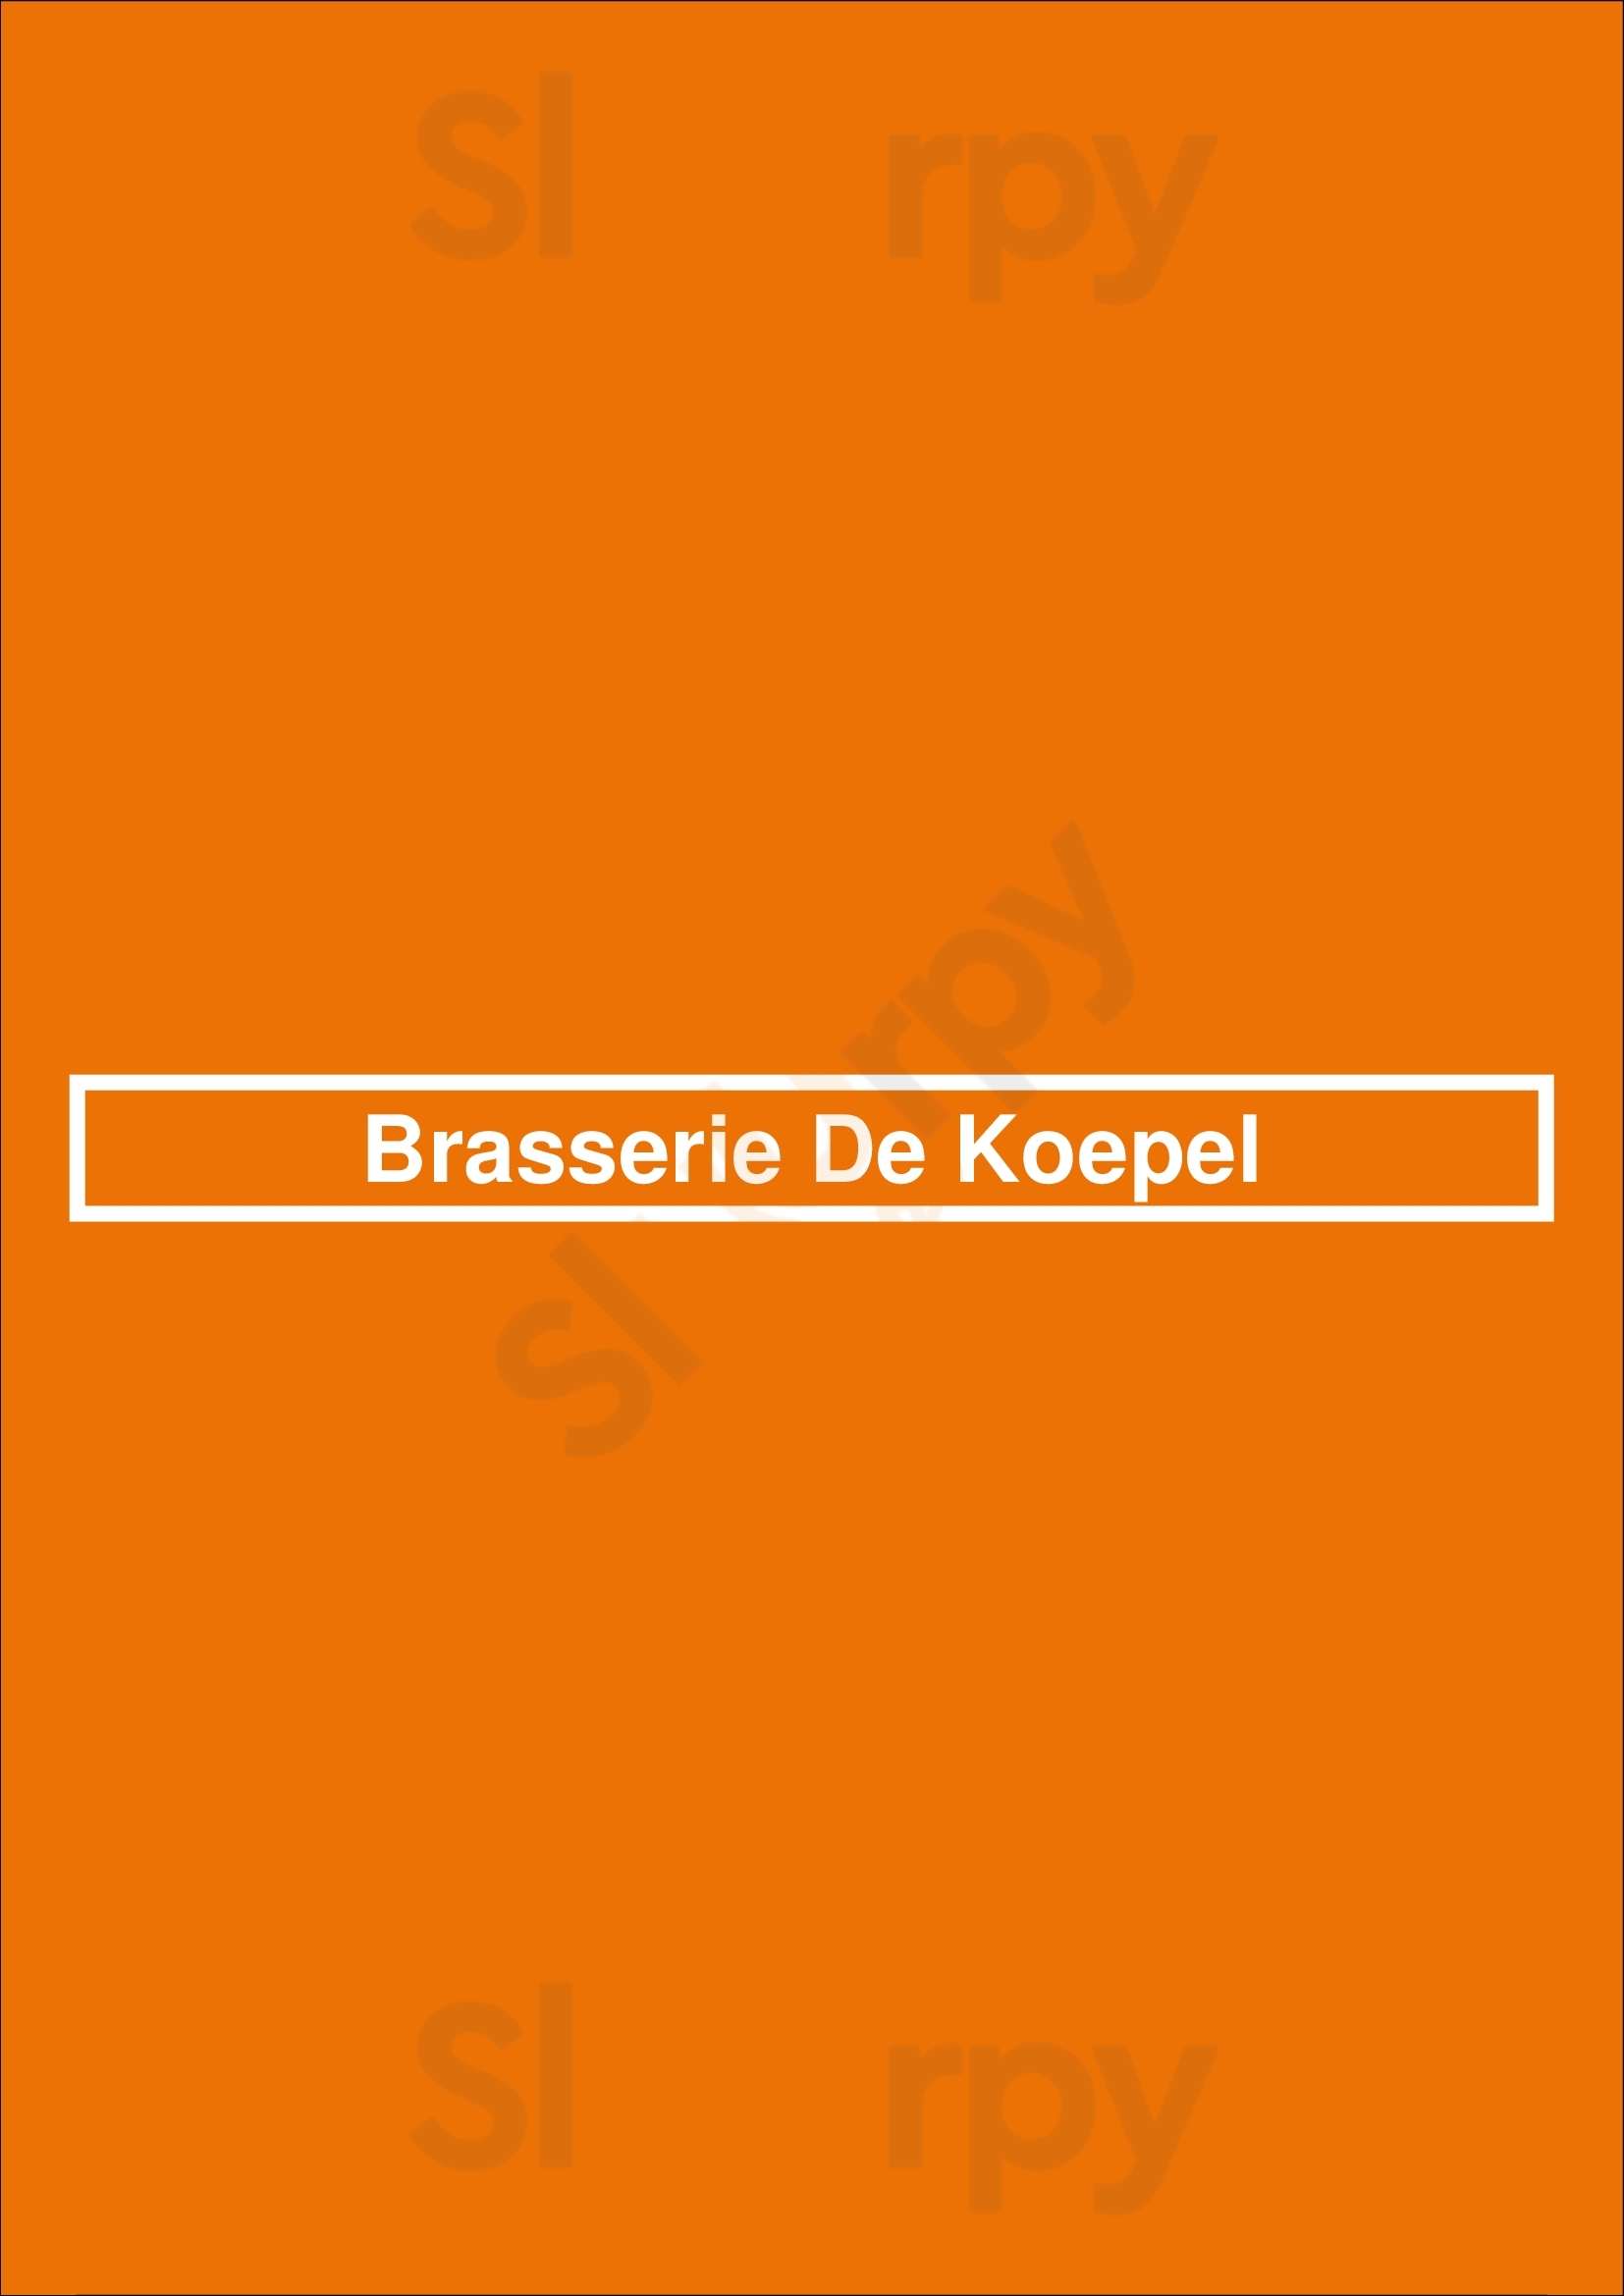 Brasserie De Koepel Voorburg Menu - 1